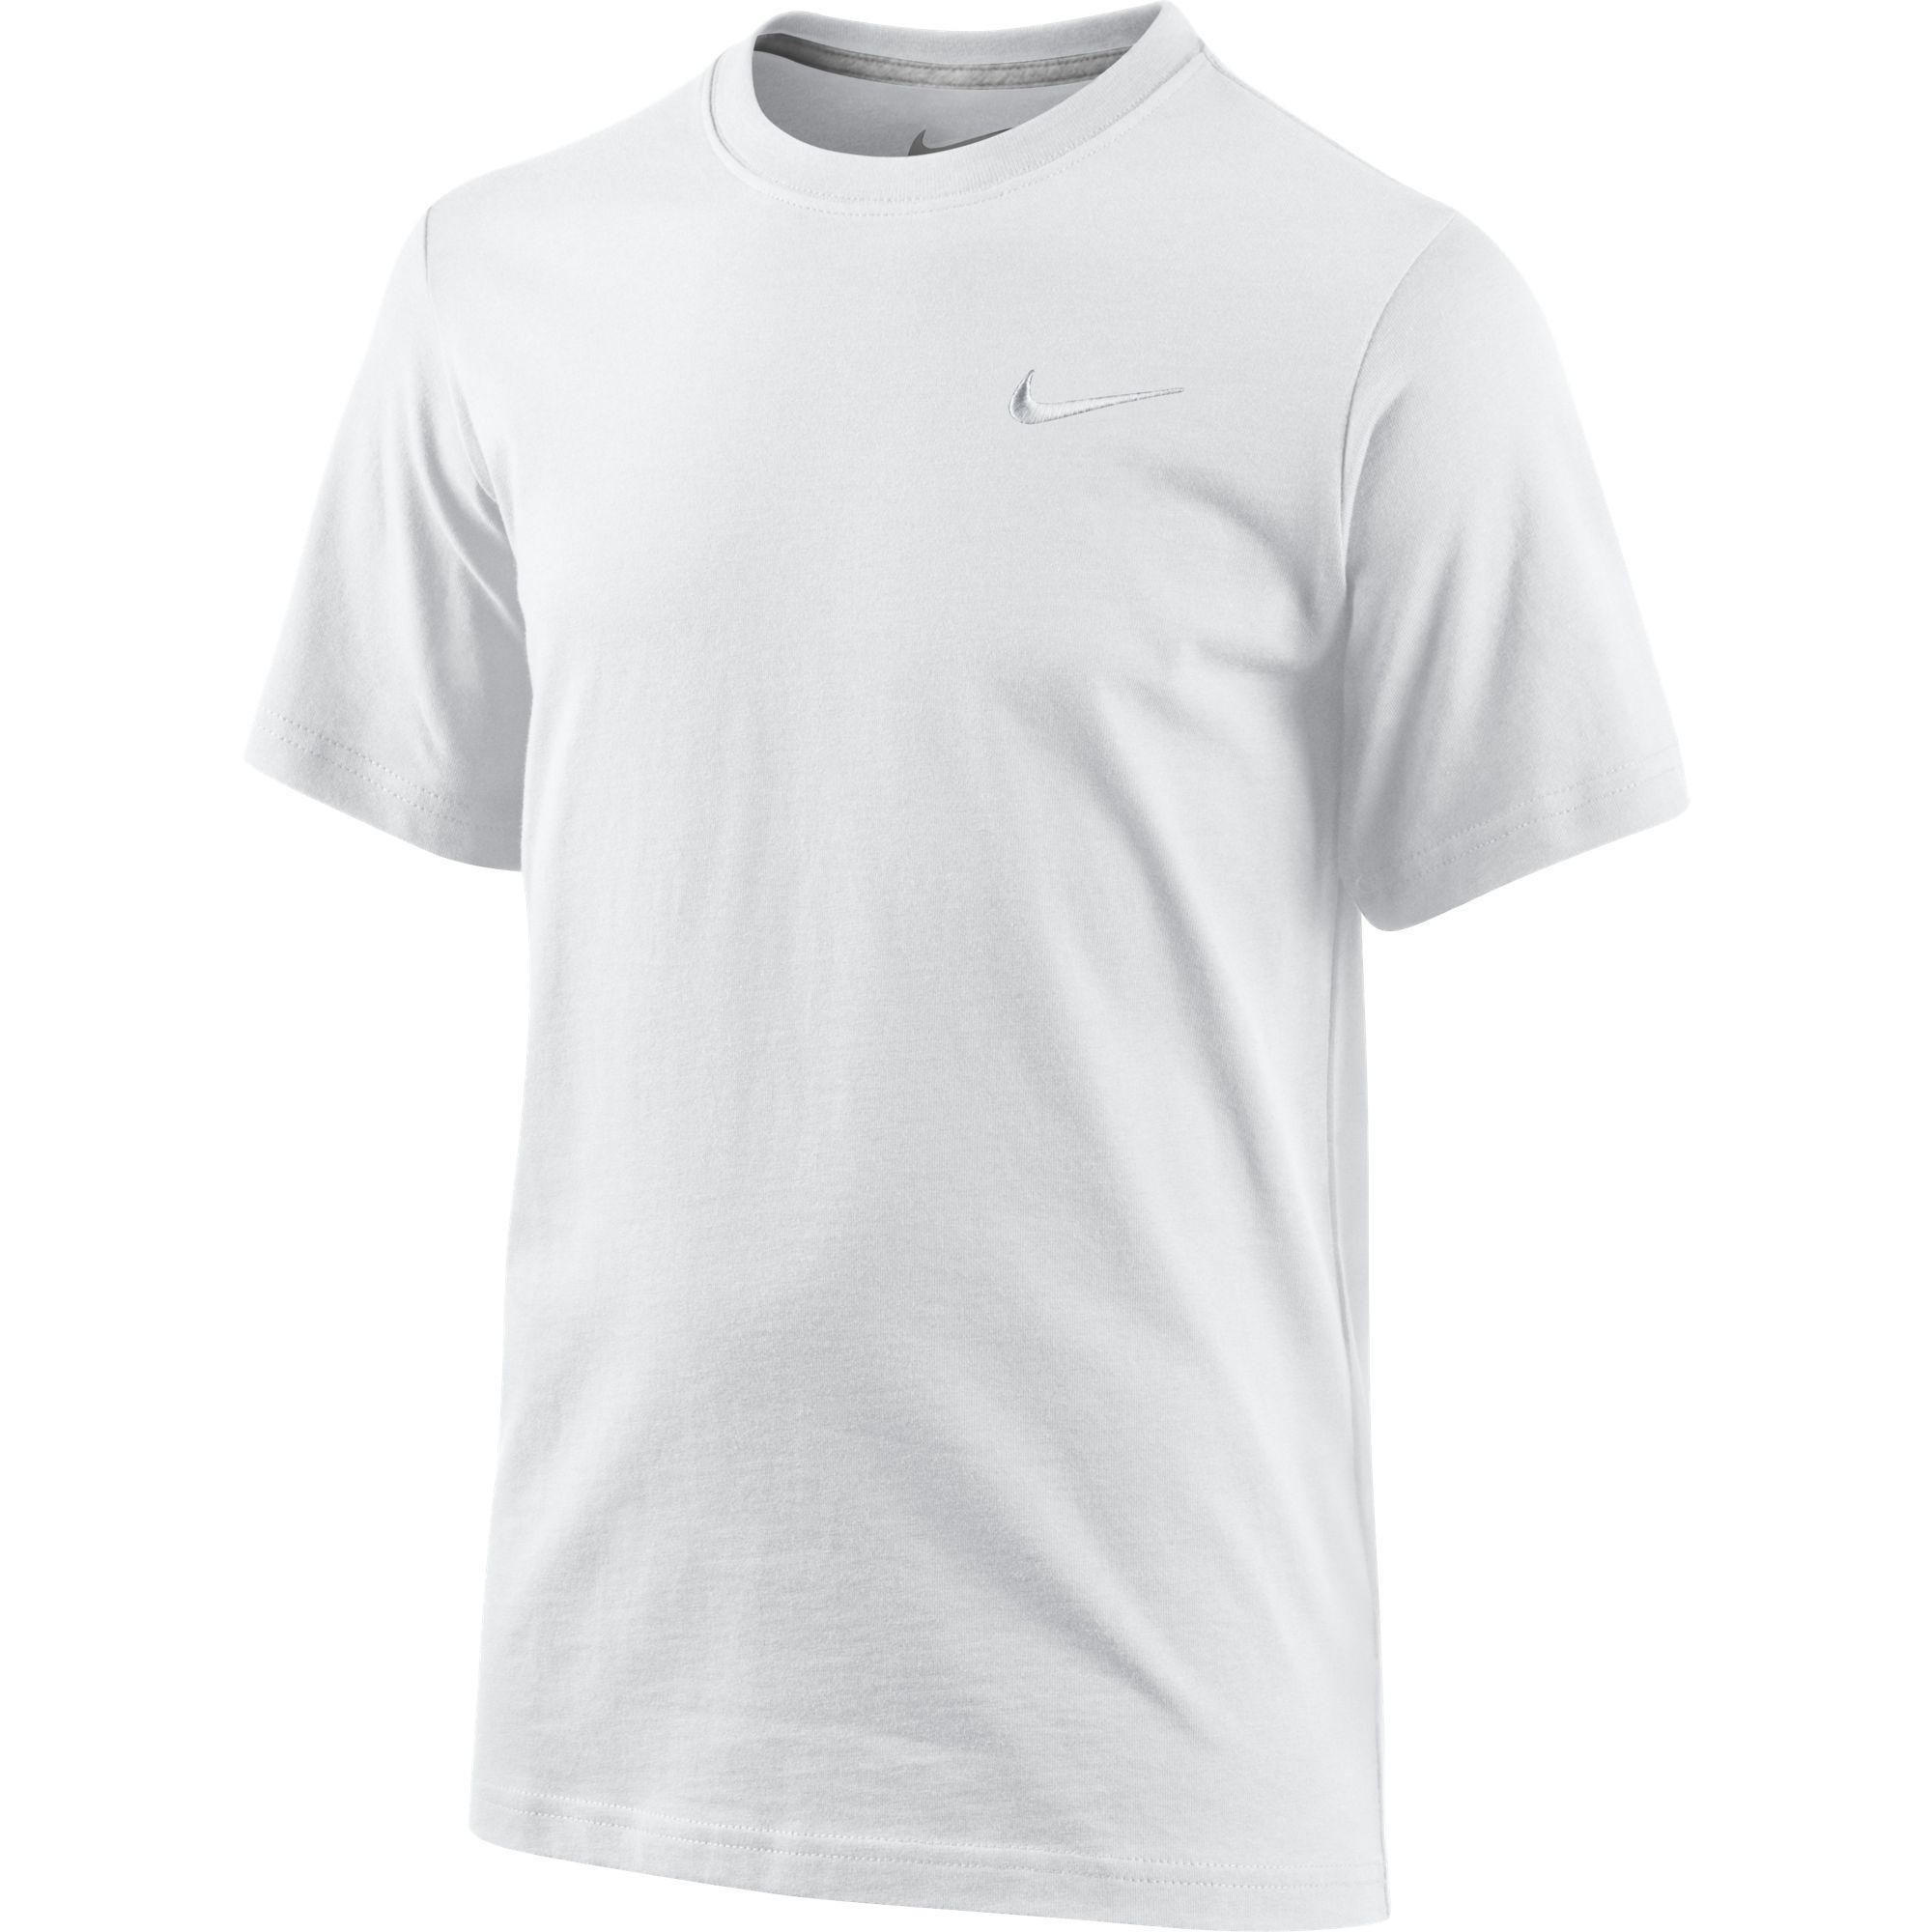 Nike Boys Swoosh T-Shirt - White/Grey - Tennisnuts.com